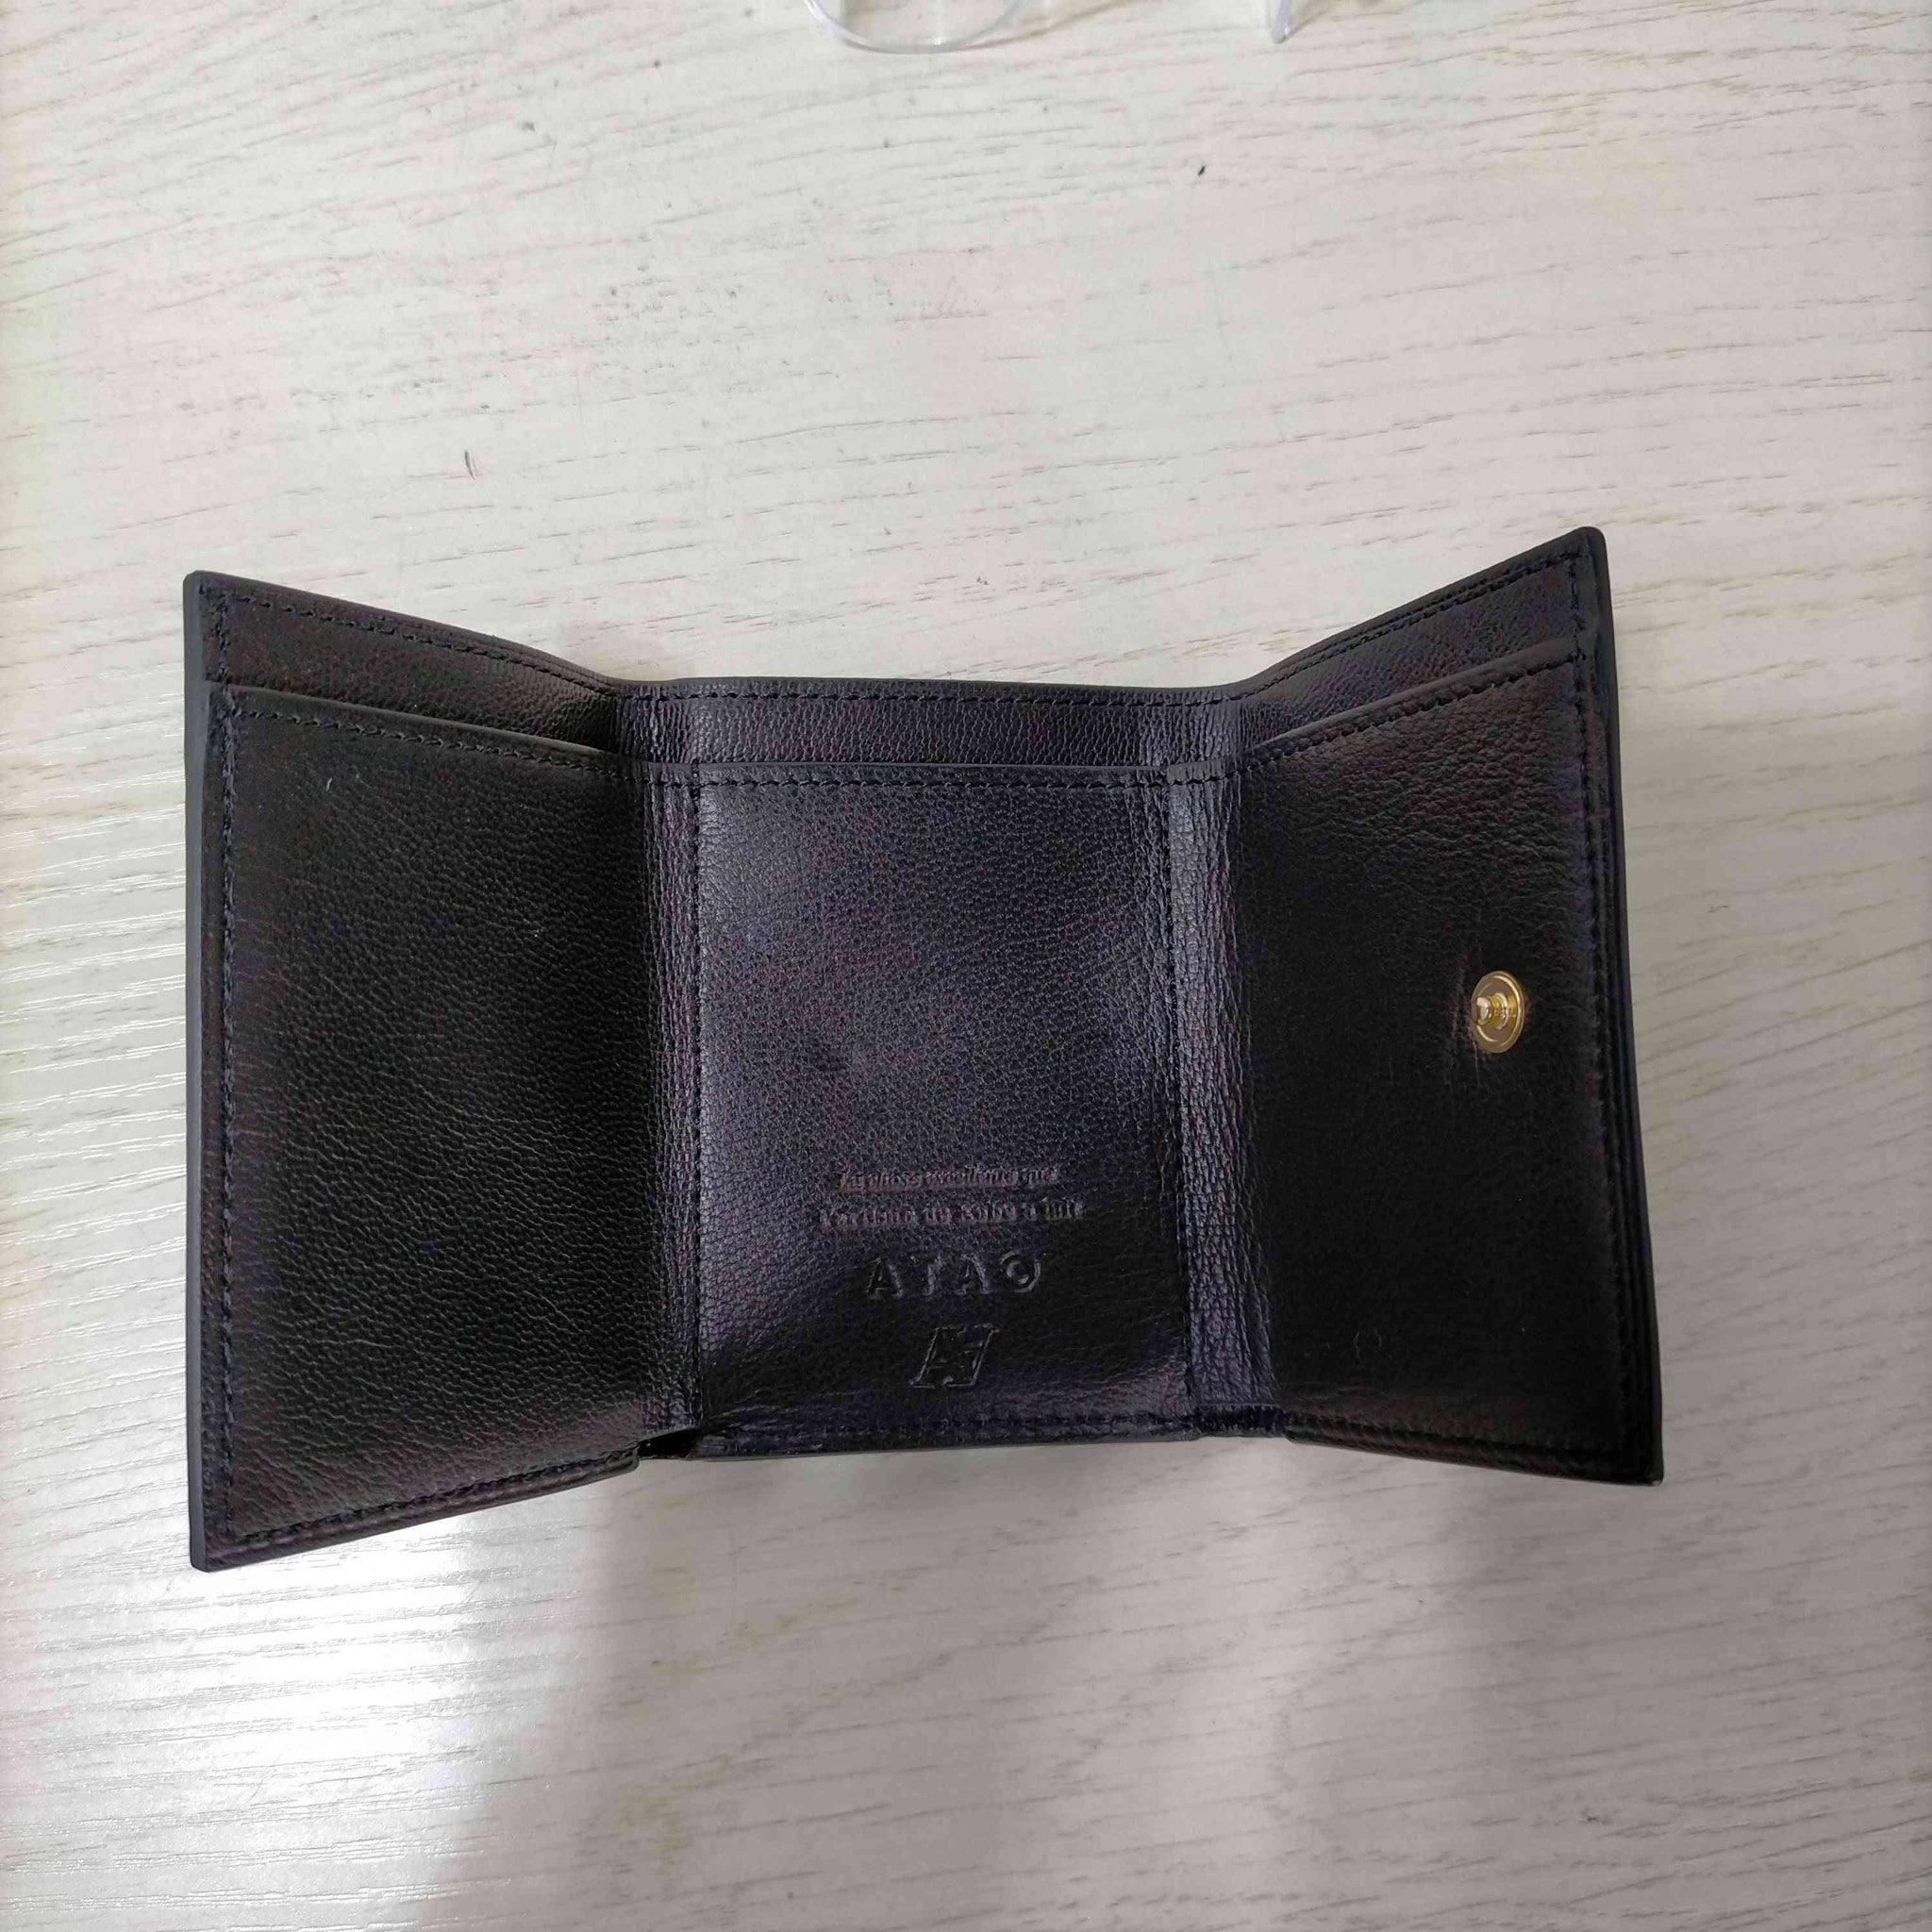 ATAO(アタオ)3つ折り財布 ミニ財布 コインケース